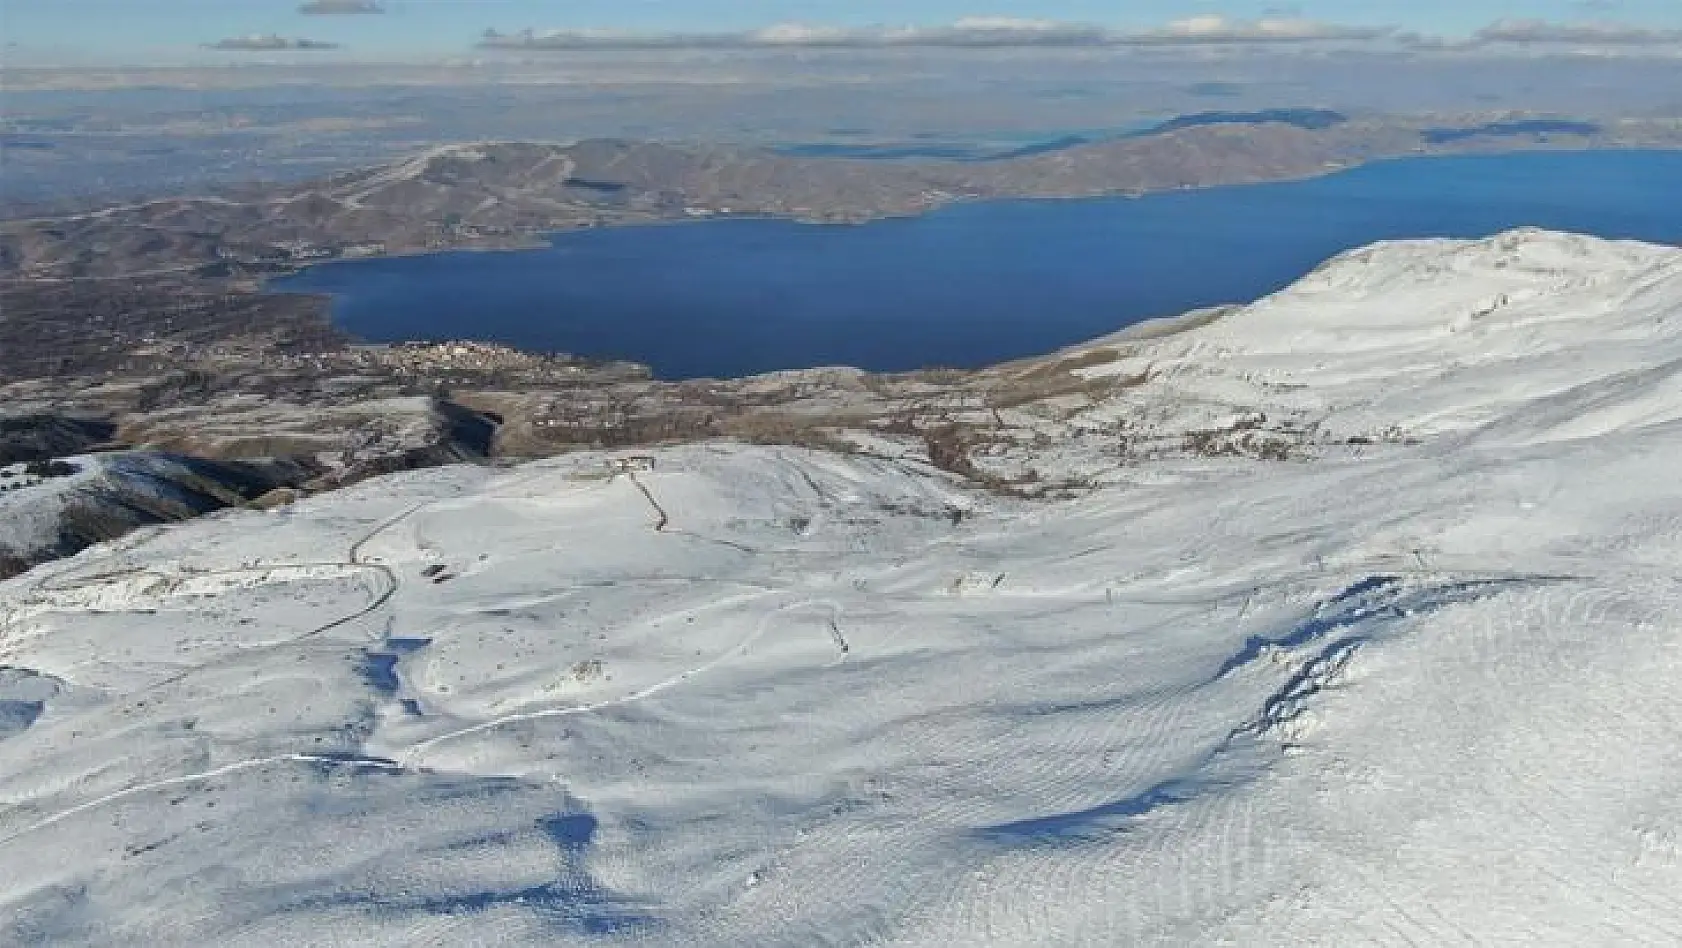 Göl manzaralı kayak merkezi sezona hazırlanıyor